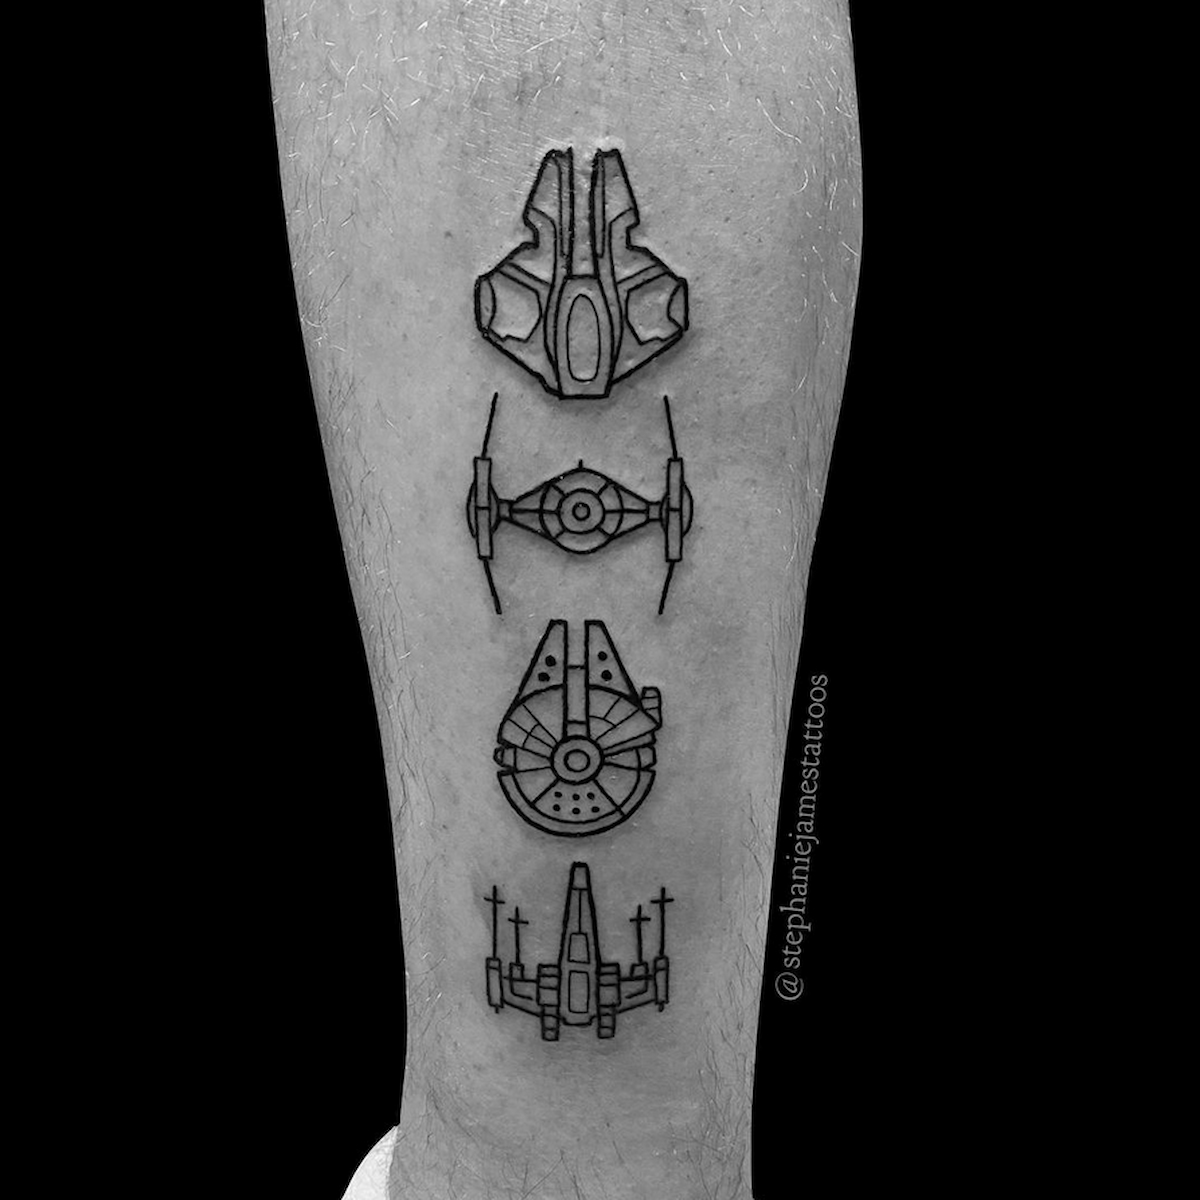 Tattoo uploaded by Tonight  Star Wars scene minimal design   minimaltattoo minimalism minimalist smalltattoo simpletattoo starwars  color  Tattoodo